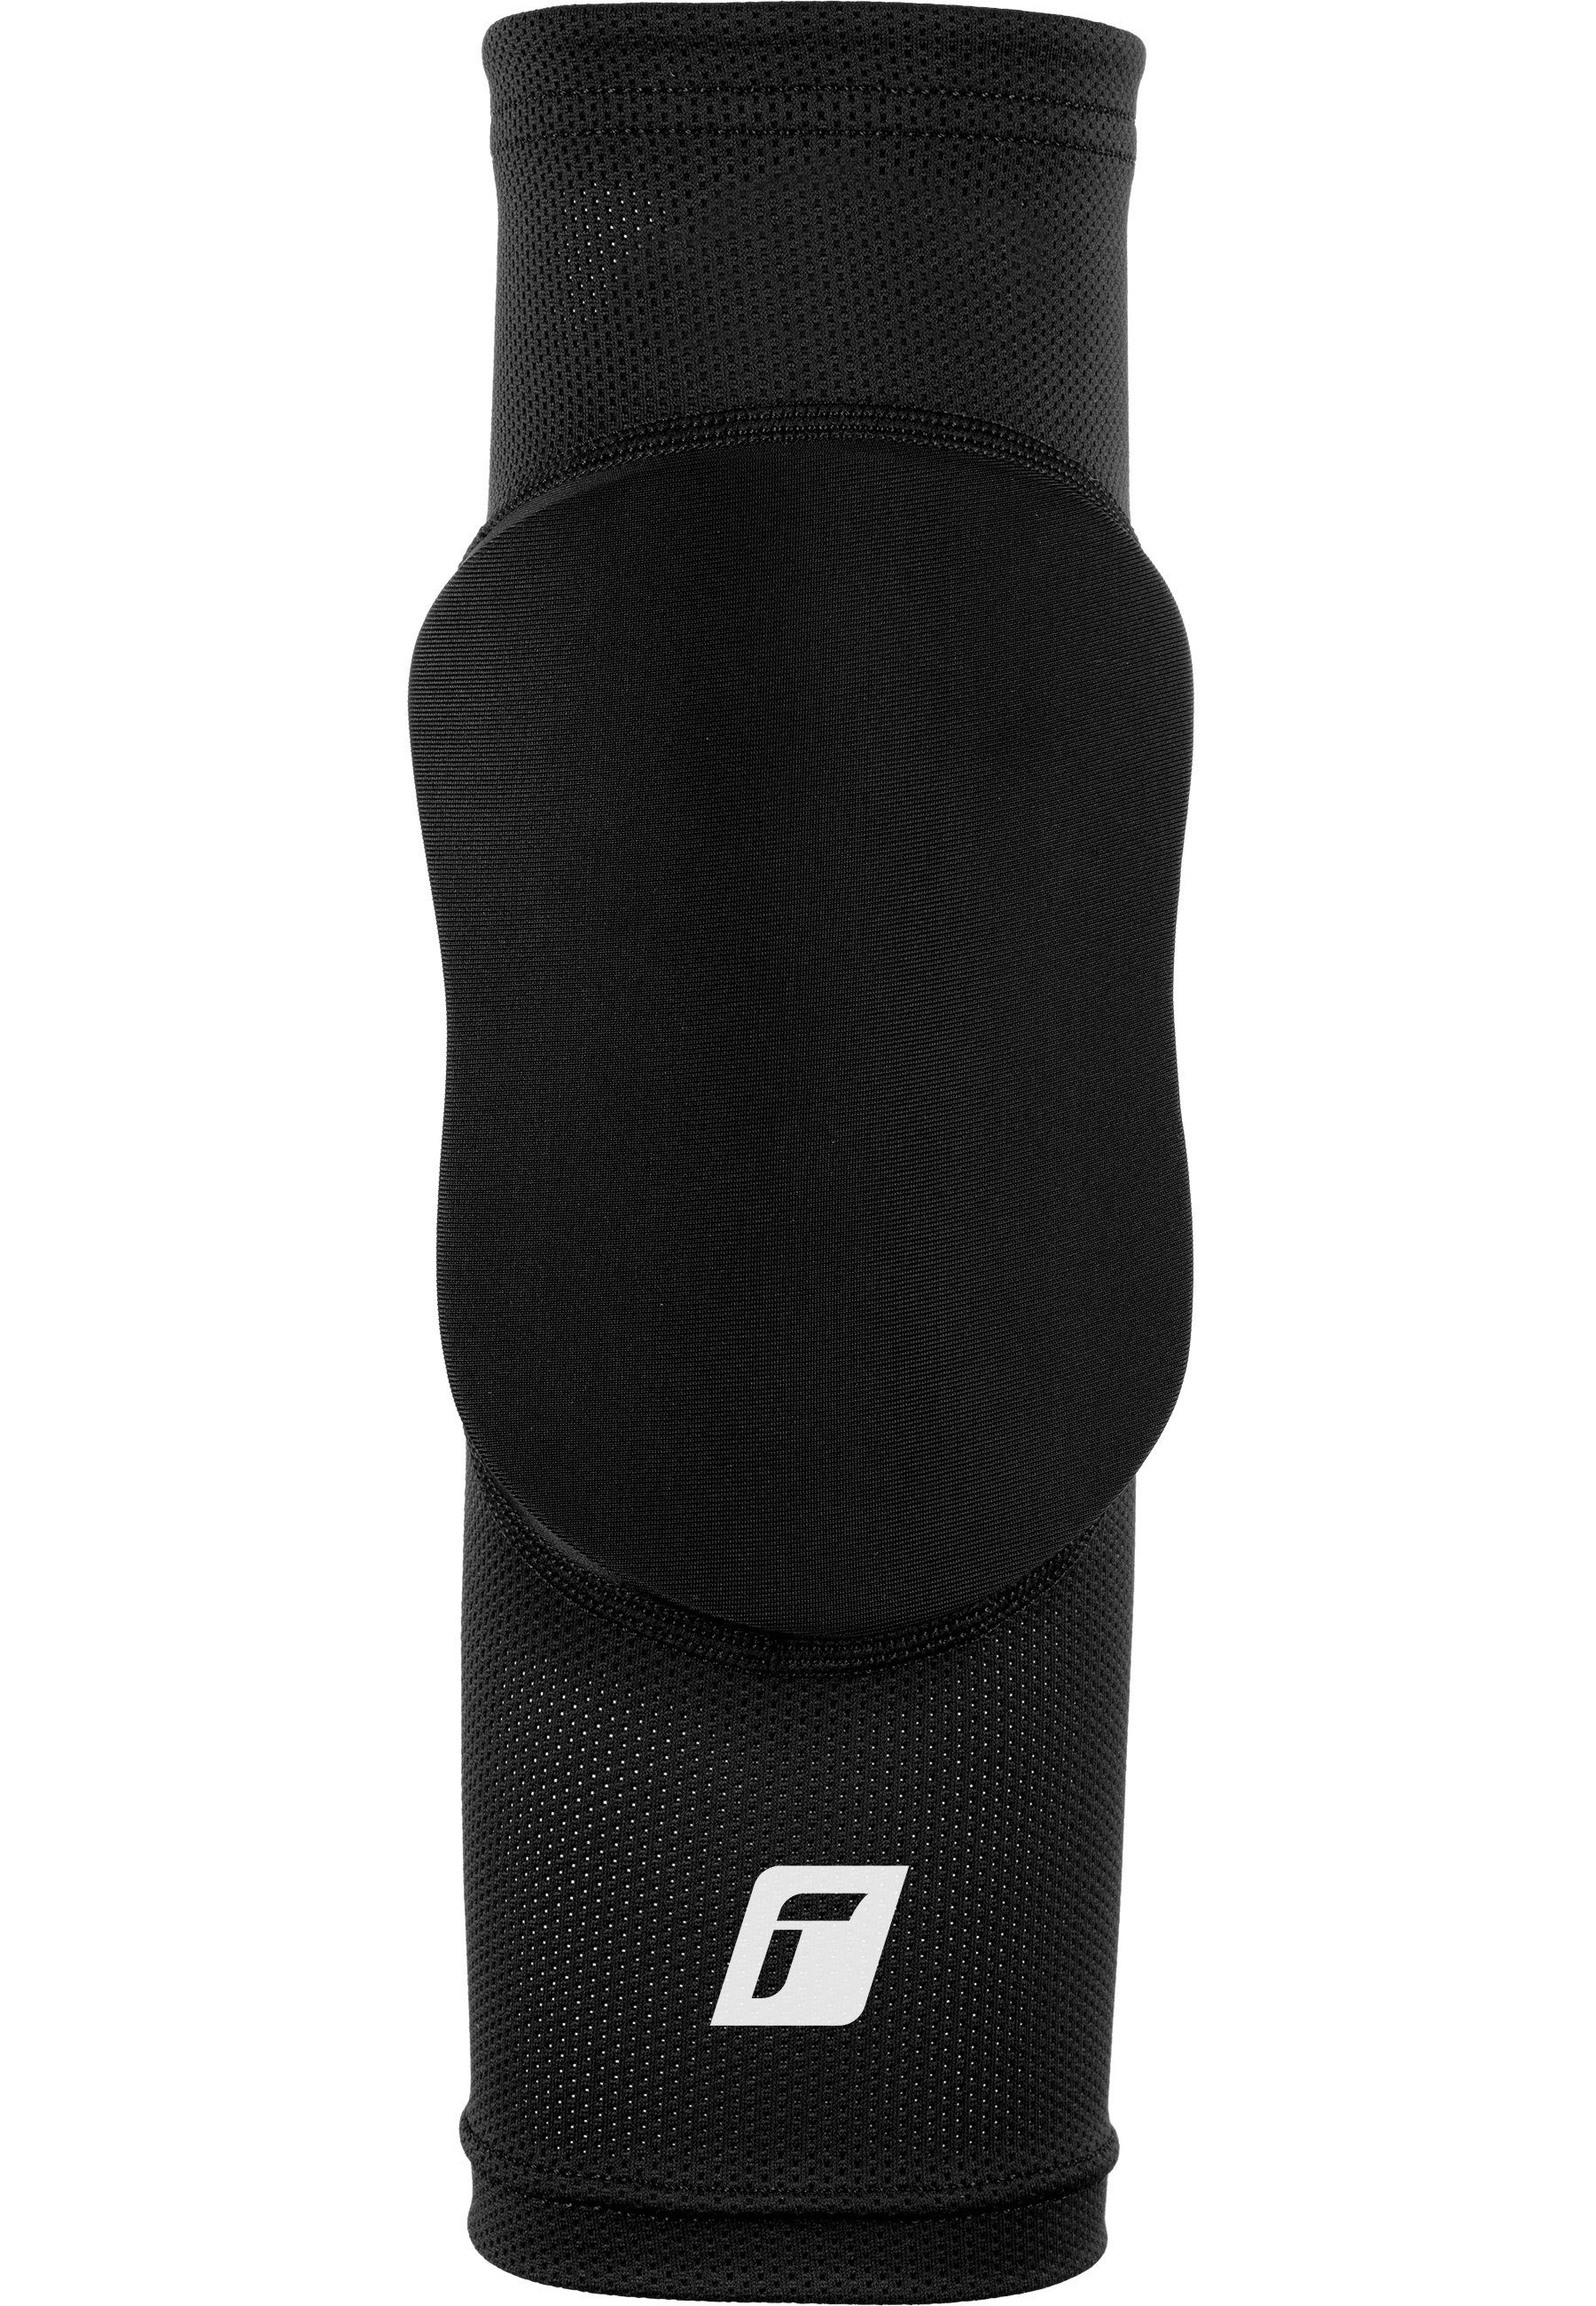 Reusch Knieprotektor Knee Protector Sleeve, für optimale Bewegungsfreiheit